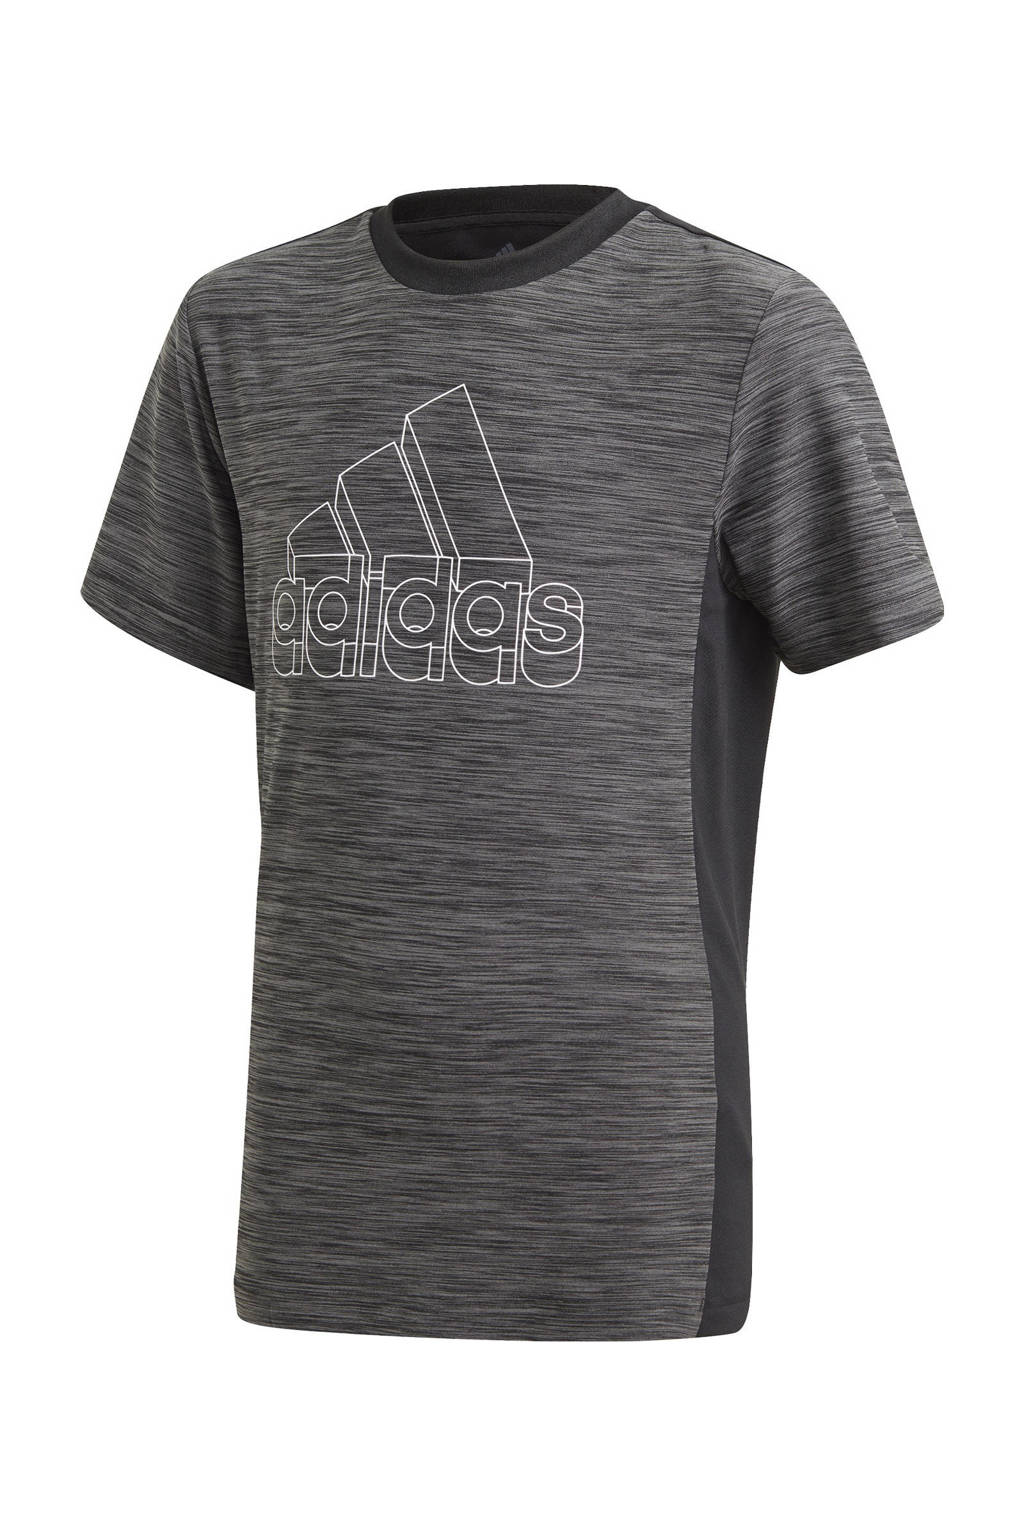 adidas Performance   sport T-shirt zwart/grijs